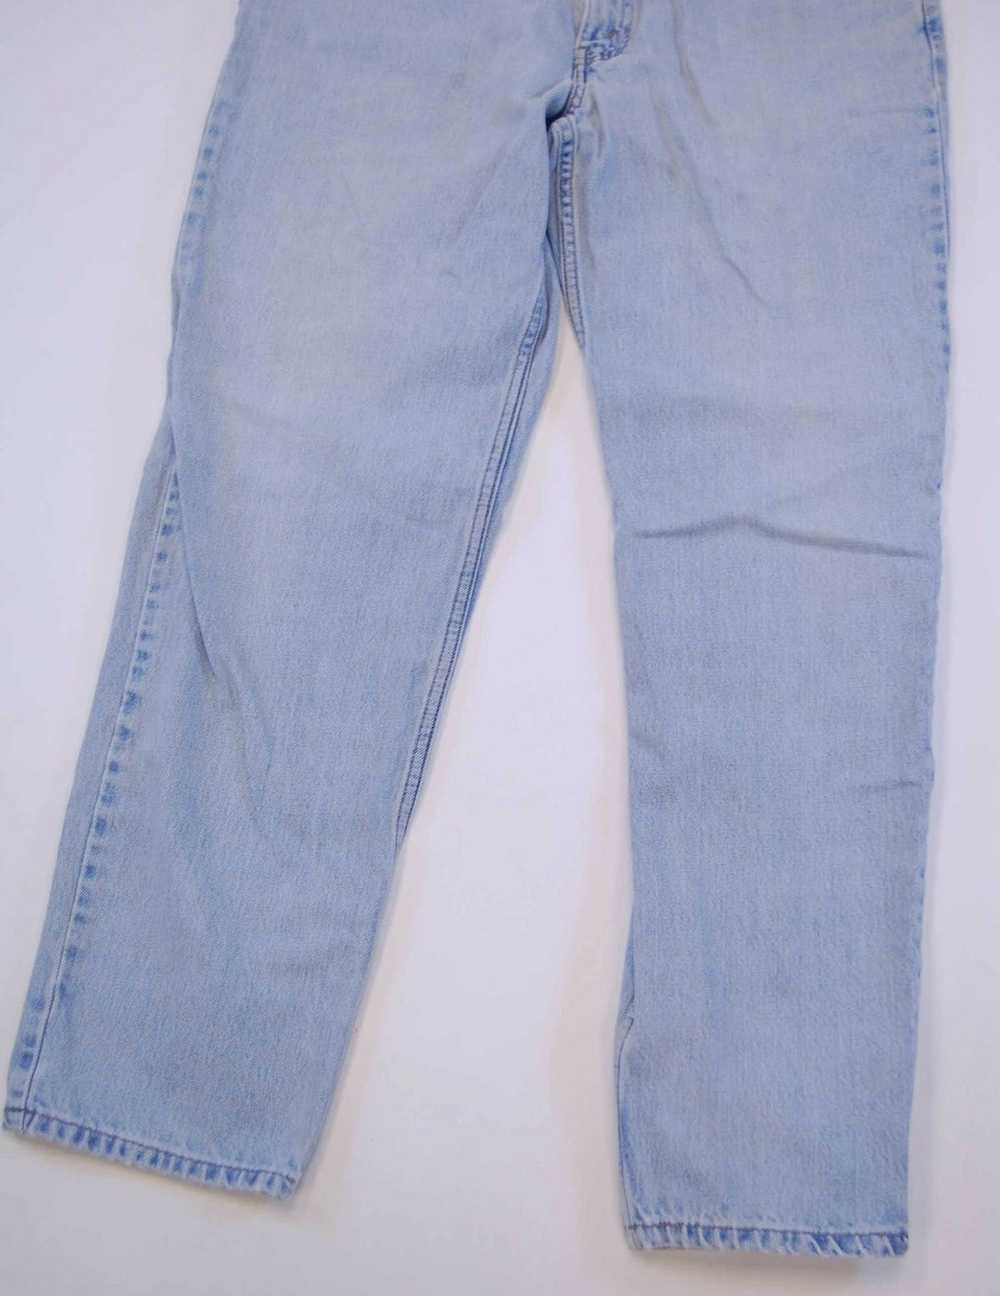 Levi's × Vintage 1999 550 Light Wash Denim Jeans - image 4